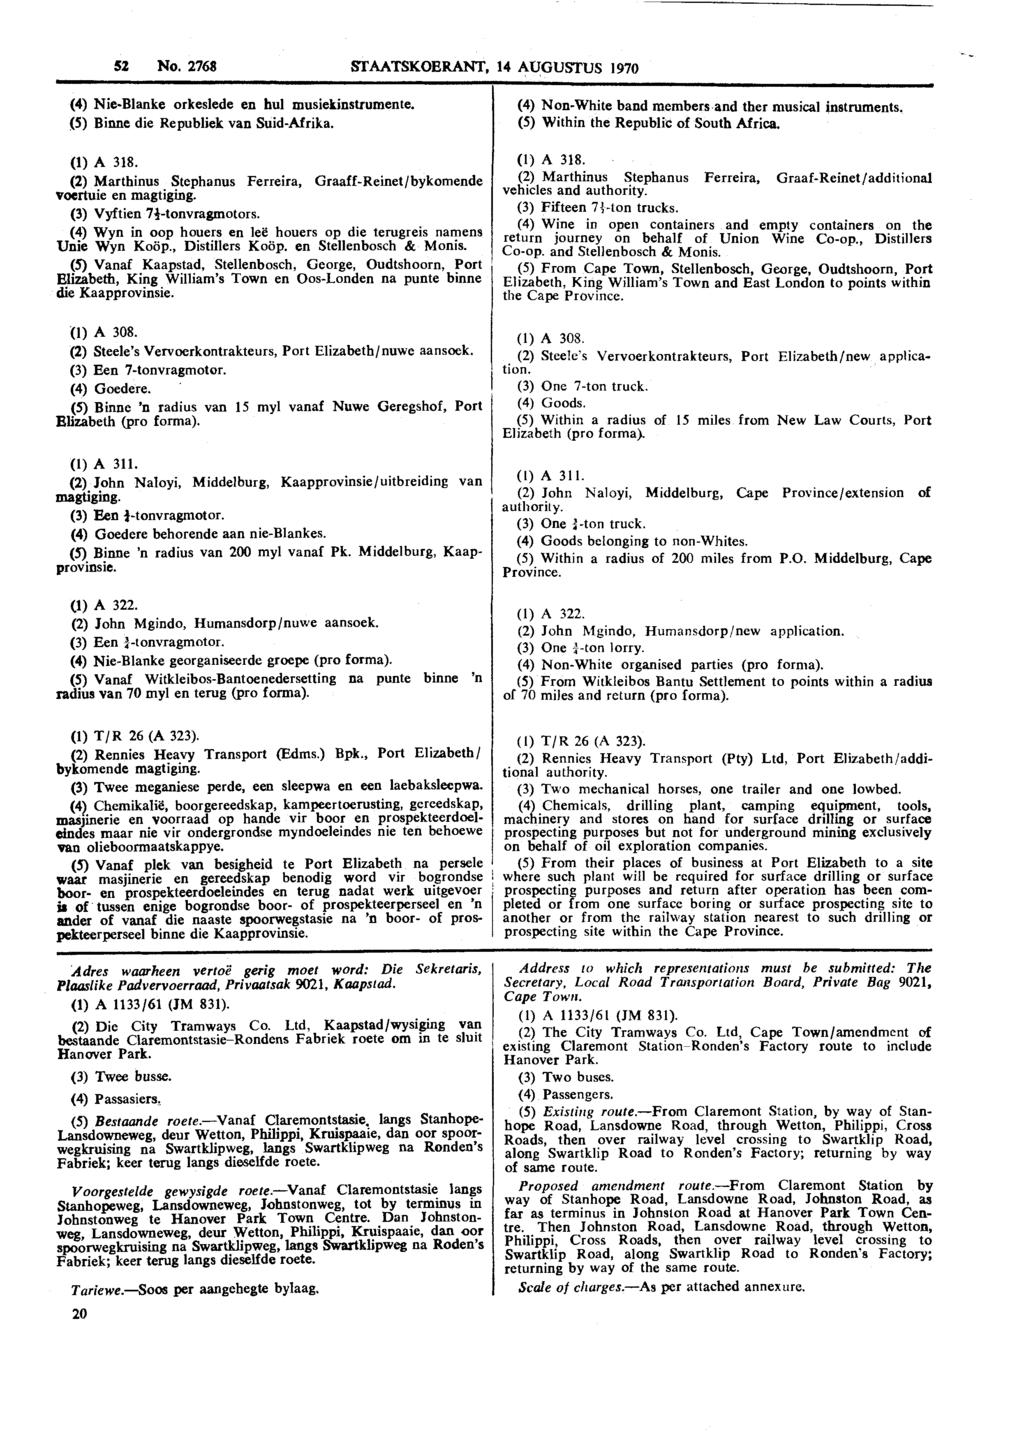 52 No. 2768 STAATSKOERANT, 14 AUGUSTUS 1970 (4) Nie-Blanke orkeslede en hul musiekinstrumente. (5) Binne die Republiek van Suid-Afrika. (1) A 318.